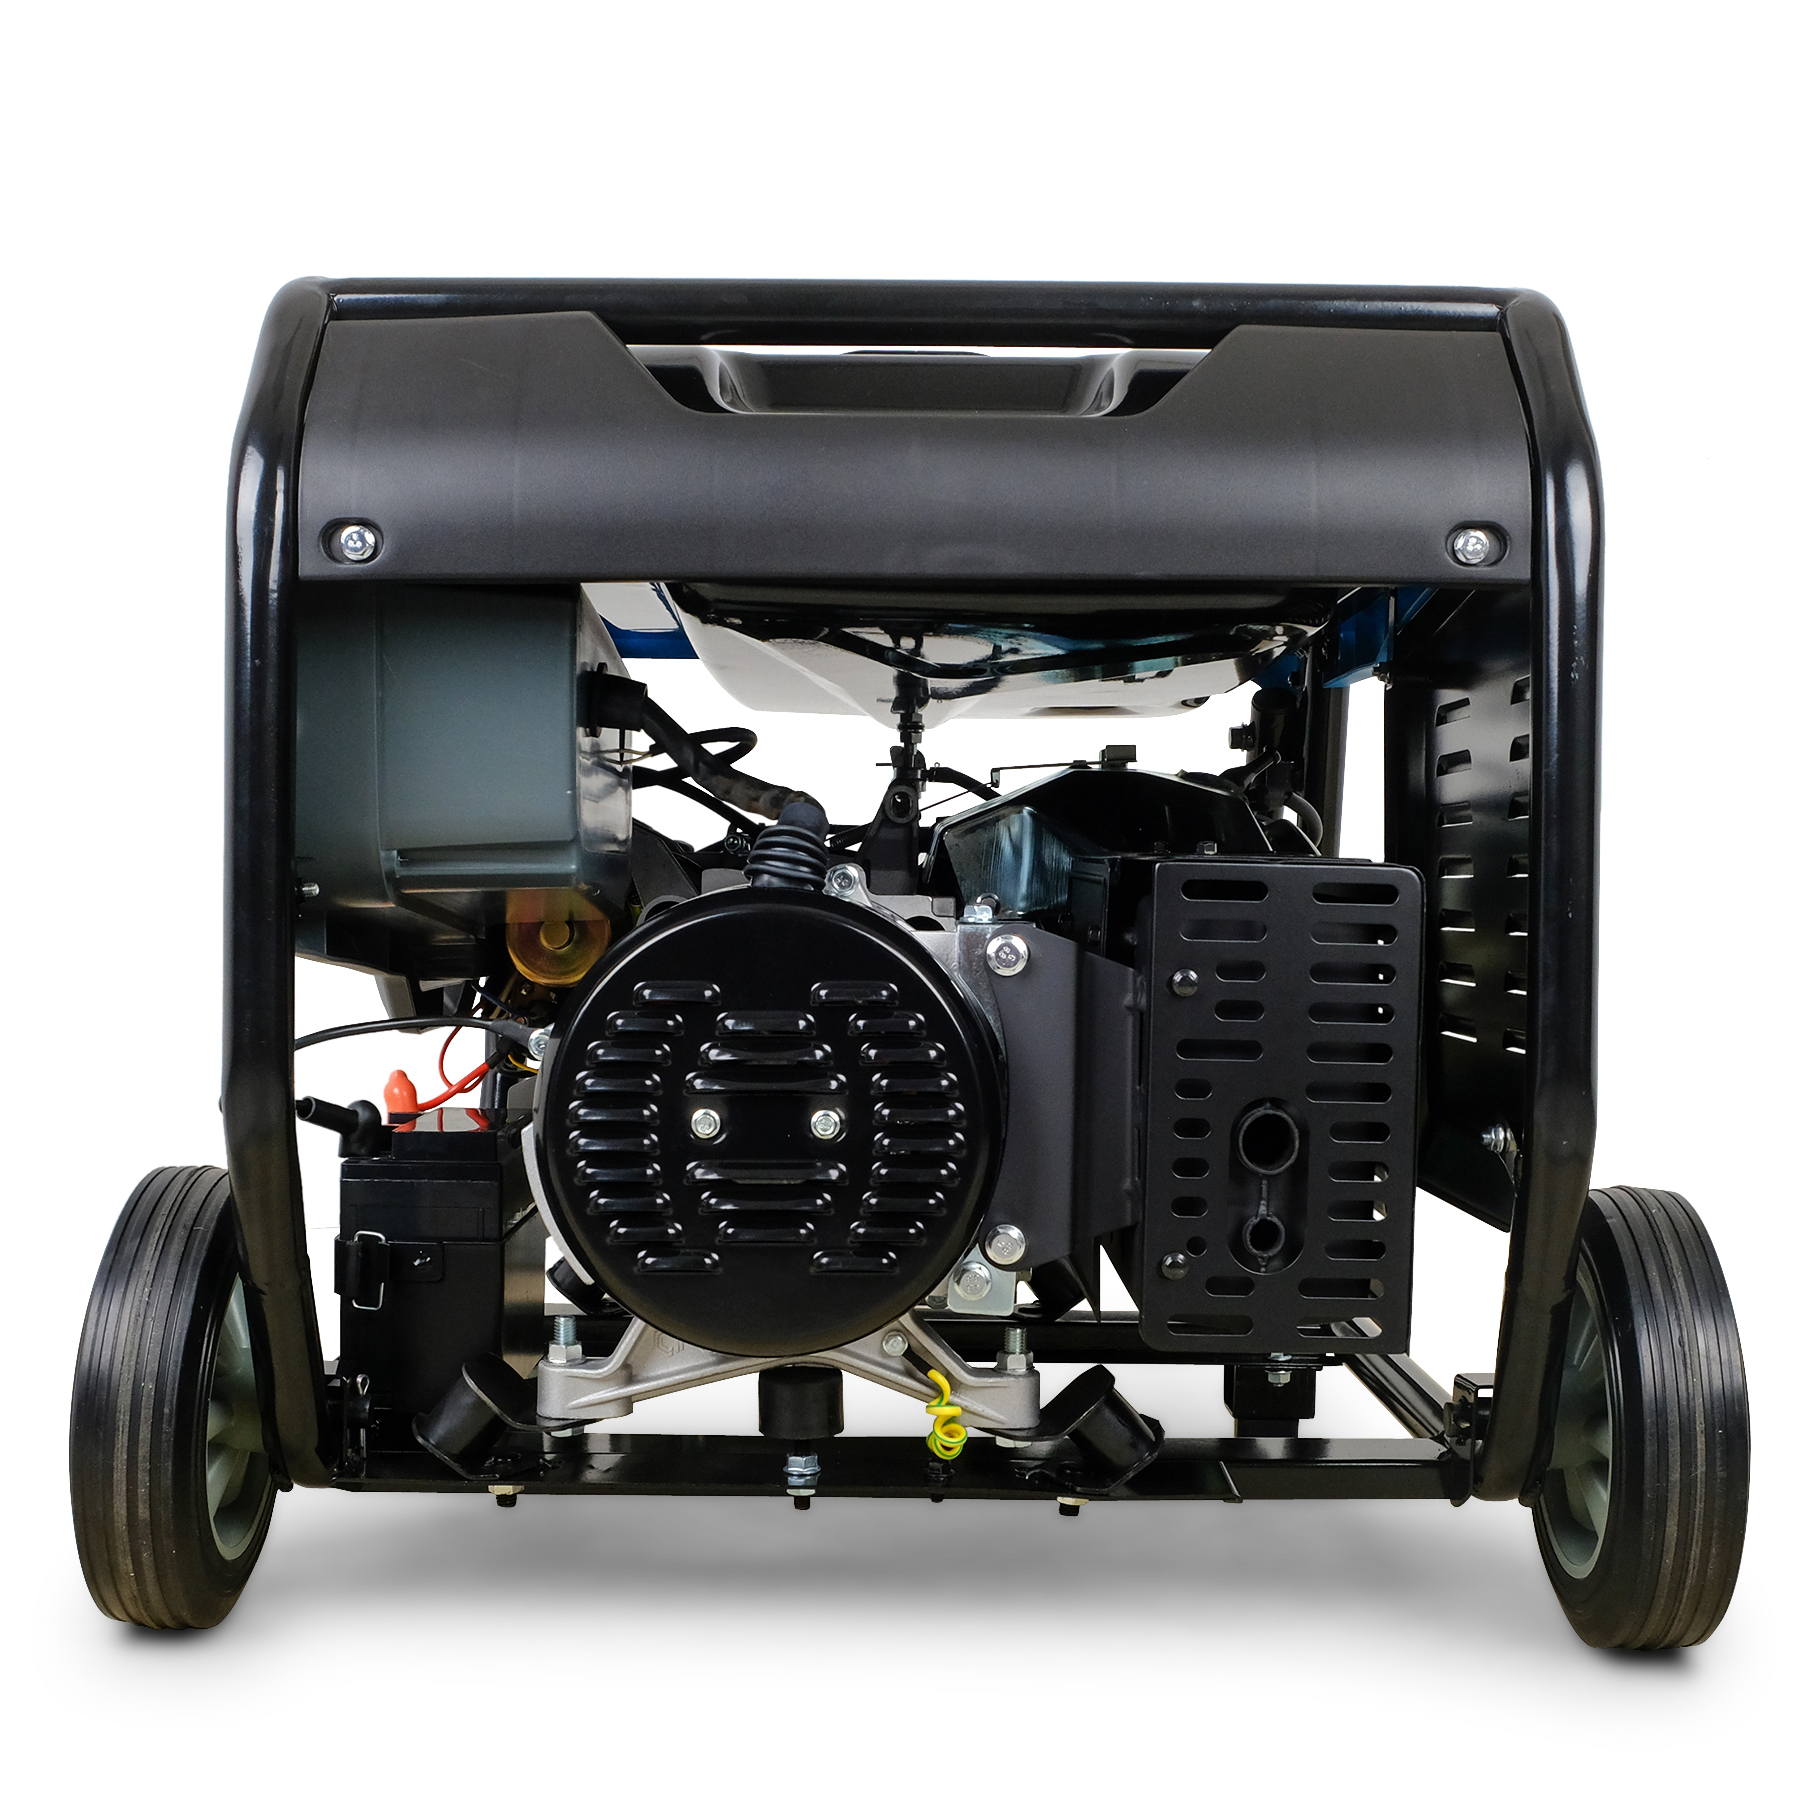 DeTec. 3-Phasen Benzin-Stromerzeuger DT-6500E-3 | 6500W 400V Starkstrom